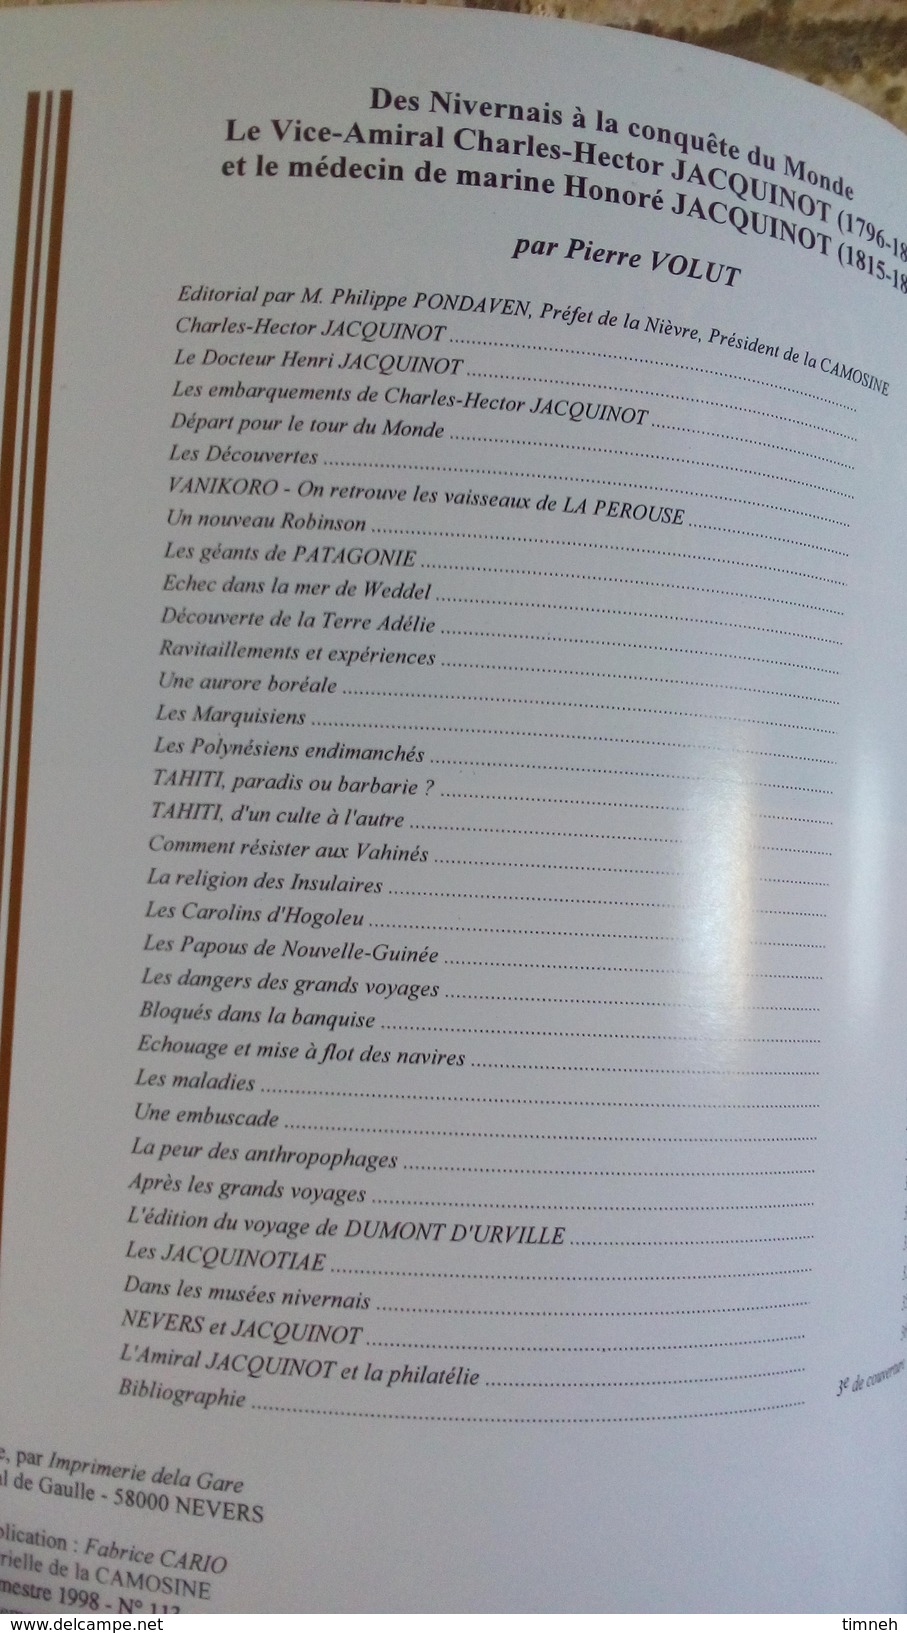 CAMOSINE N°92 - DES NIVERNAIS A LA CONQUÊTE DU MONDE JACQUINOT Par Volut - Les Annales Du Pays Nivernais 1998 - Langues Slaves